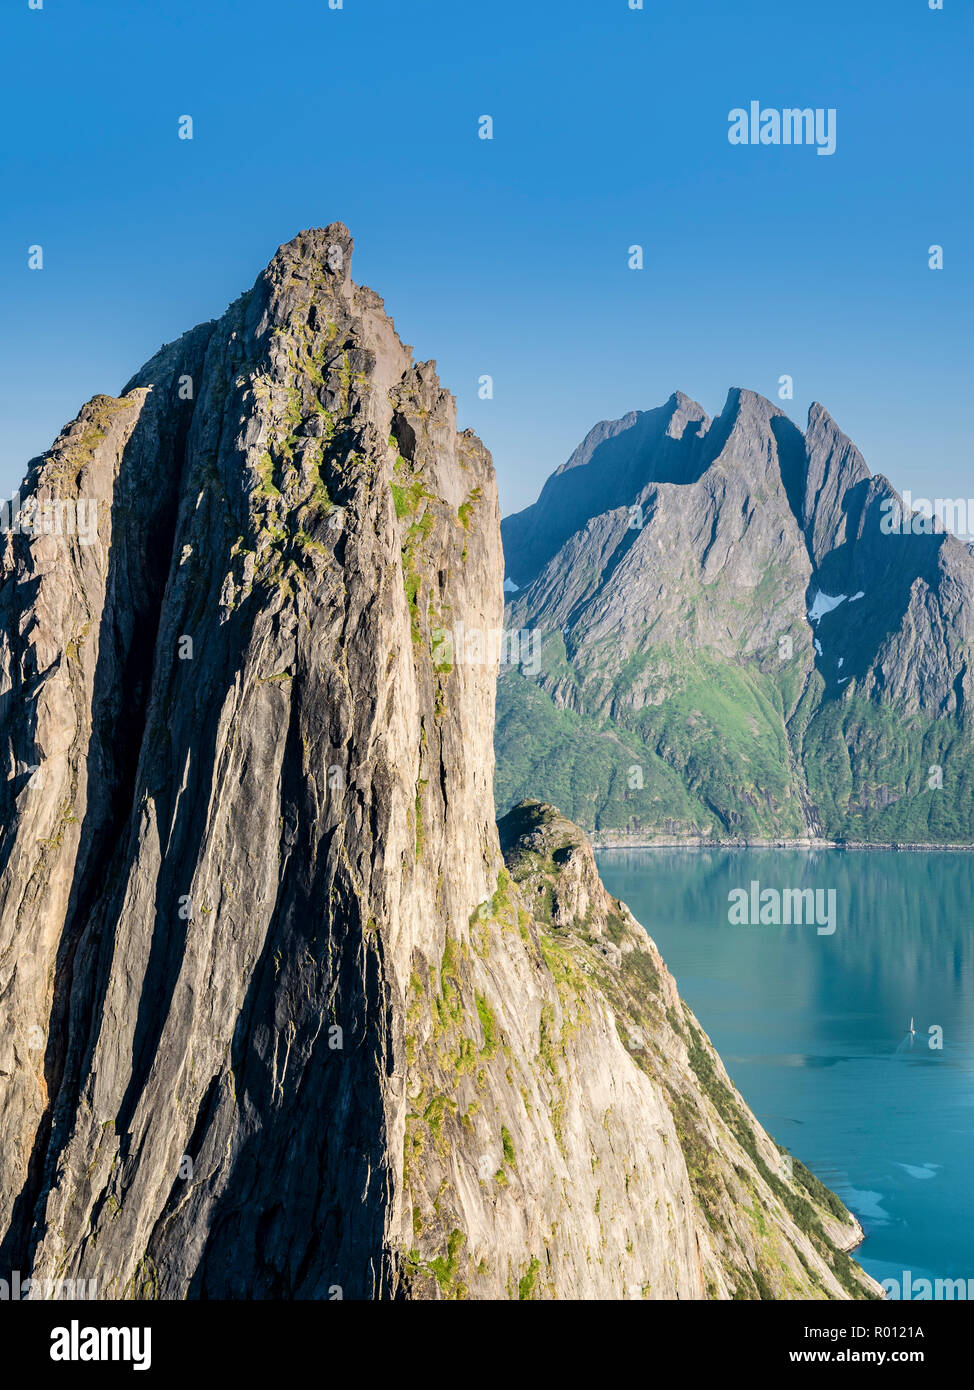 Mountain Segla visto dalla montagna Hesten, ripida scogliera, picco Breidtinden nel retro, piccola imbarcazione a vela sulla calma vedere, isola Senja, Troms, Norvegia Foto Stock